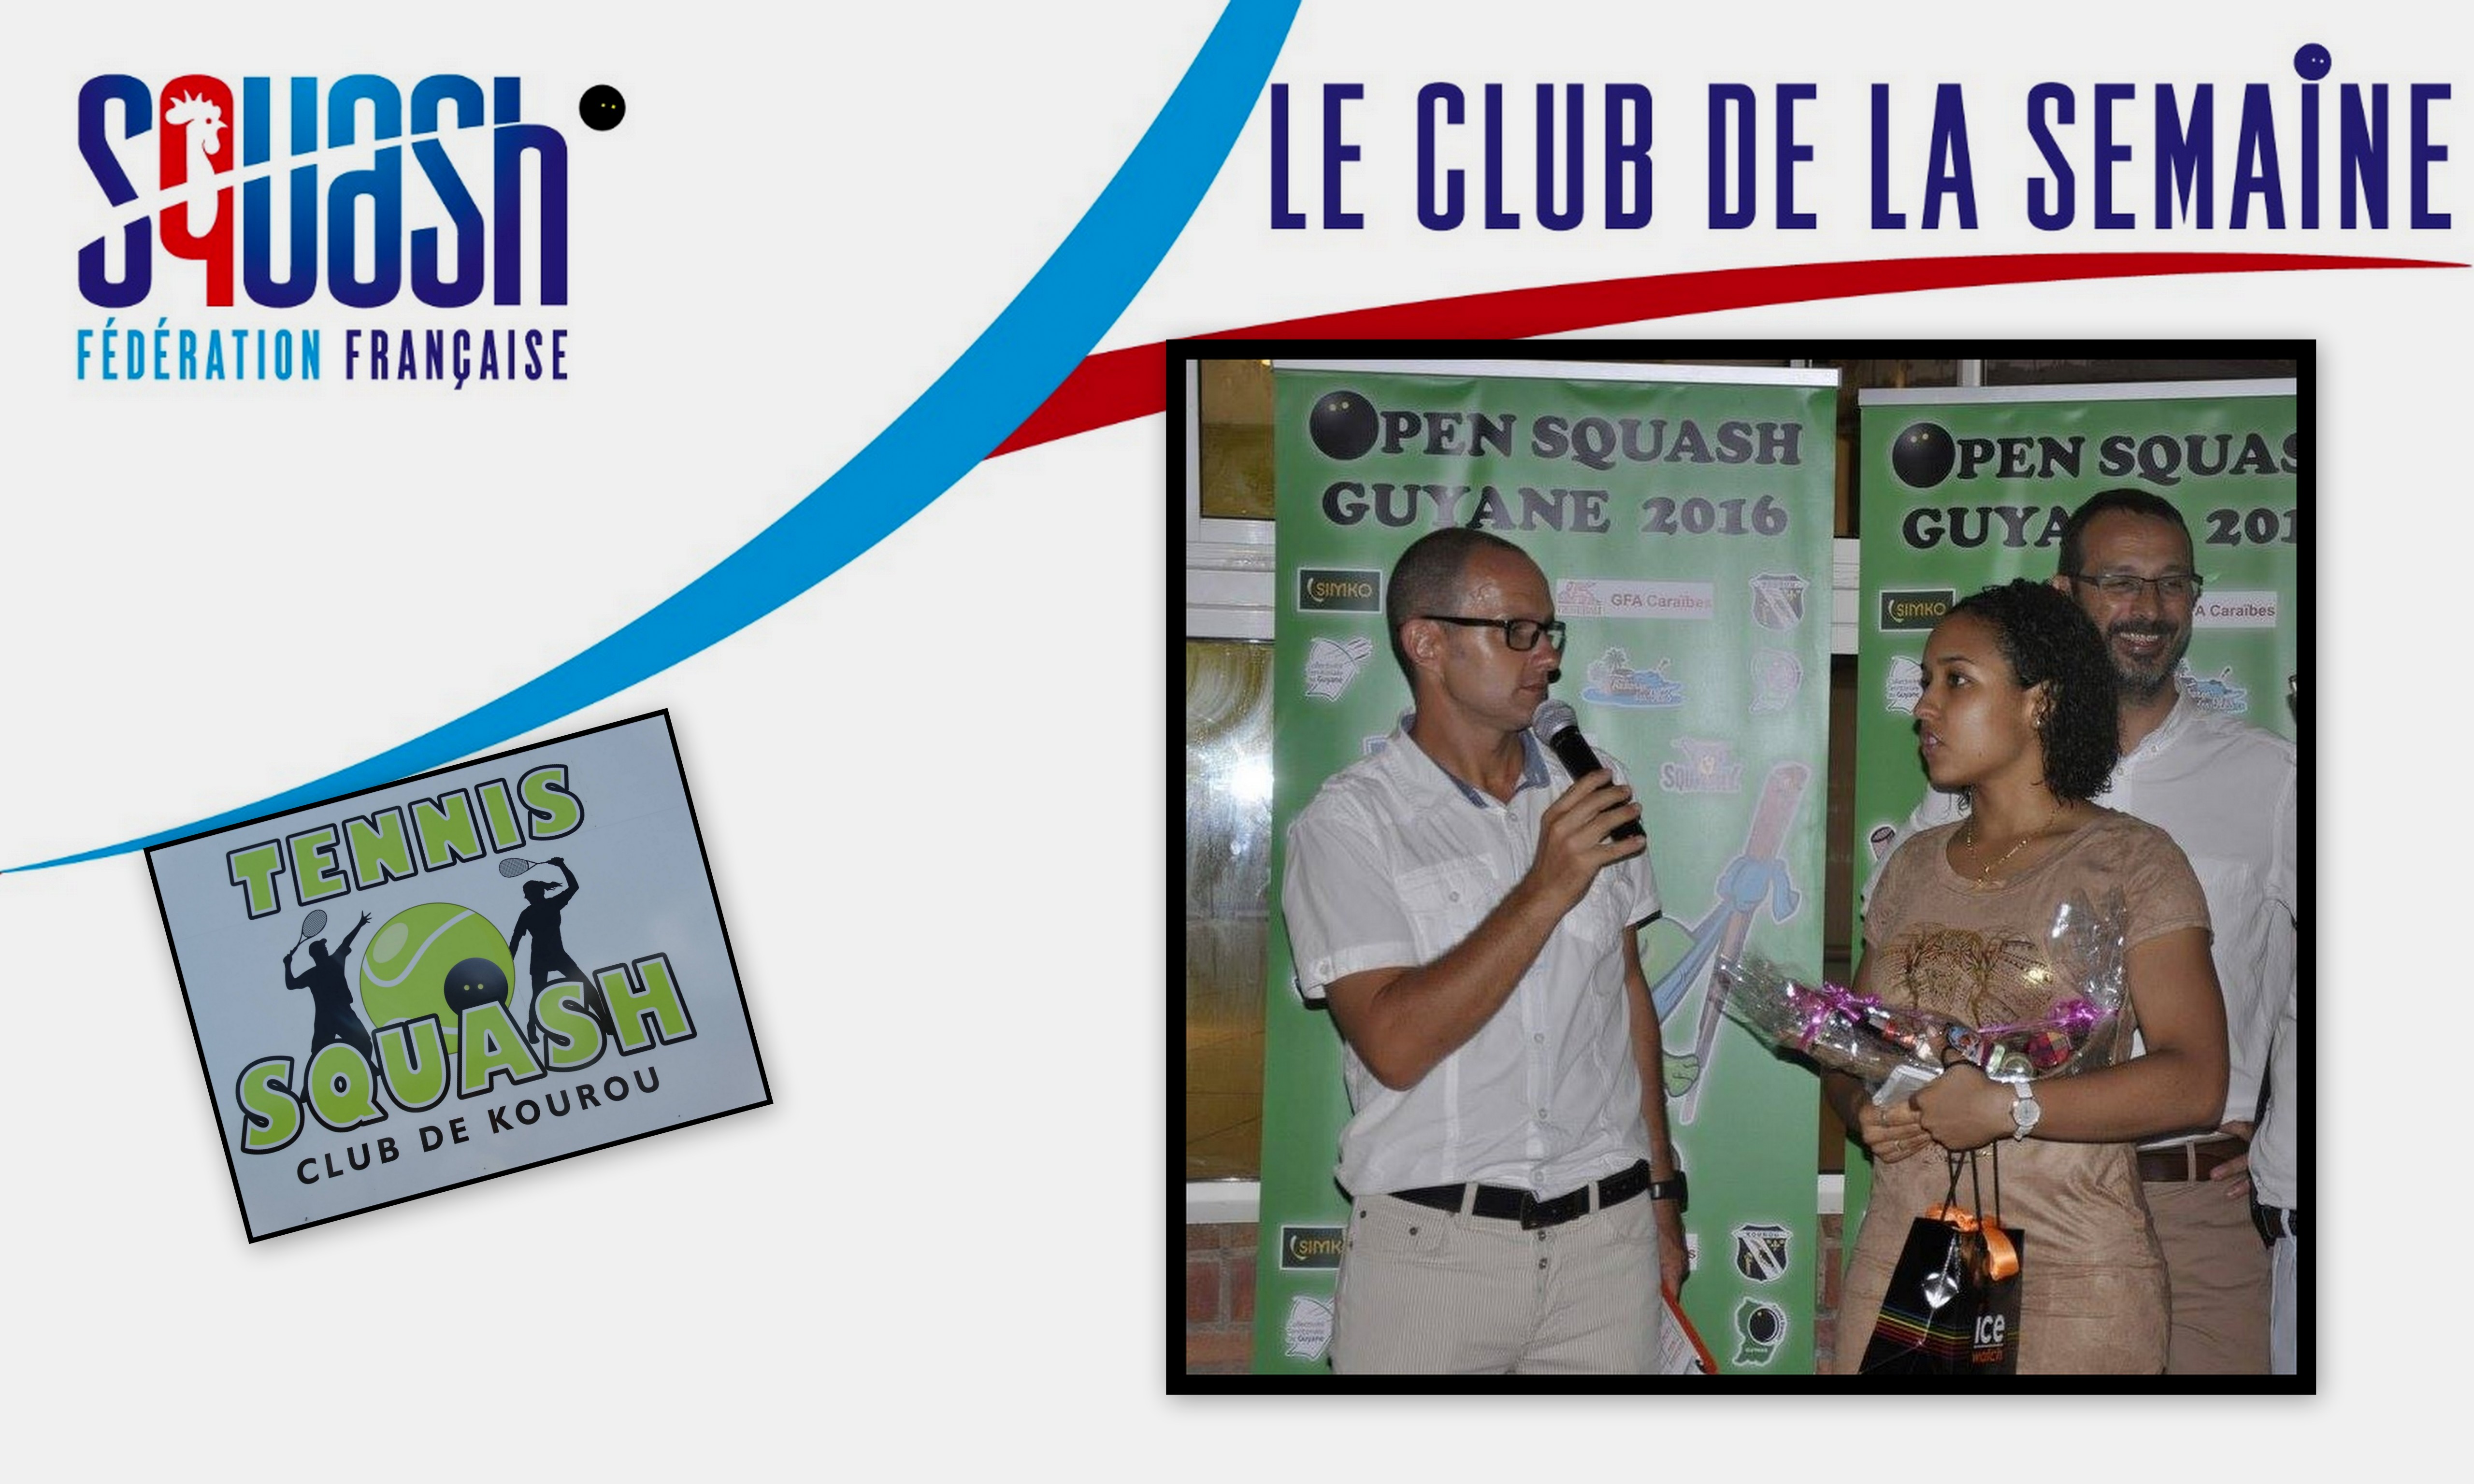 LE CLUB DE LA SEMAINE : TENNIS ET SQUASH CLUB DE KOUROU